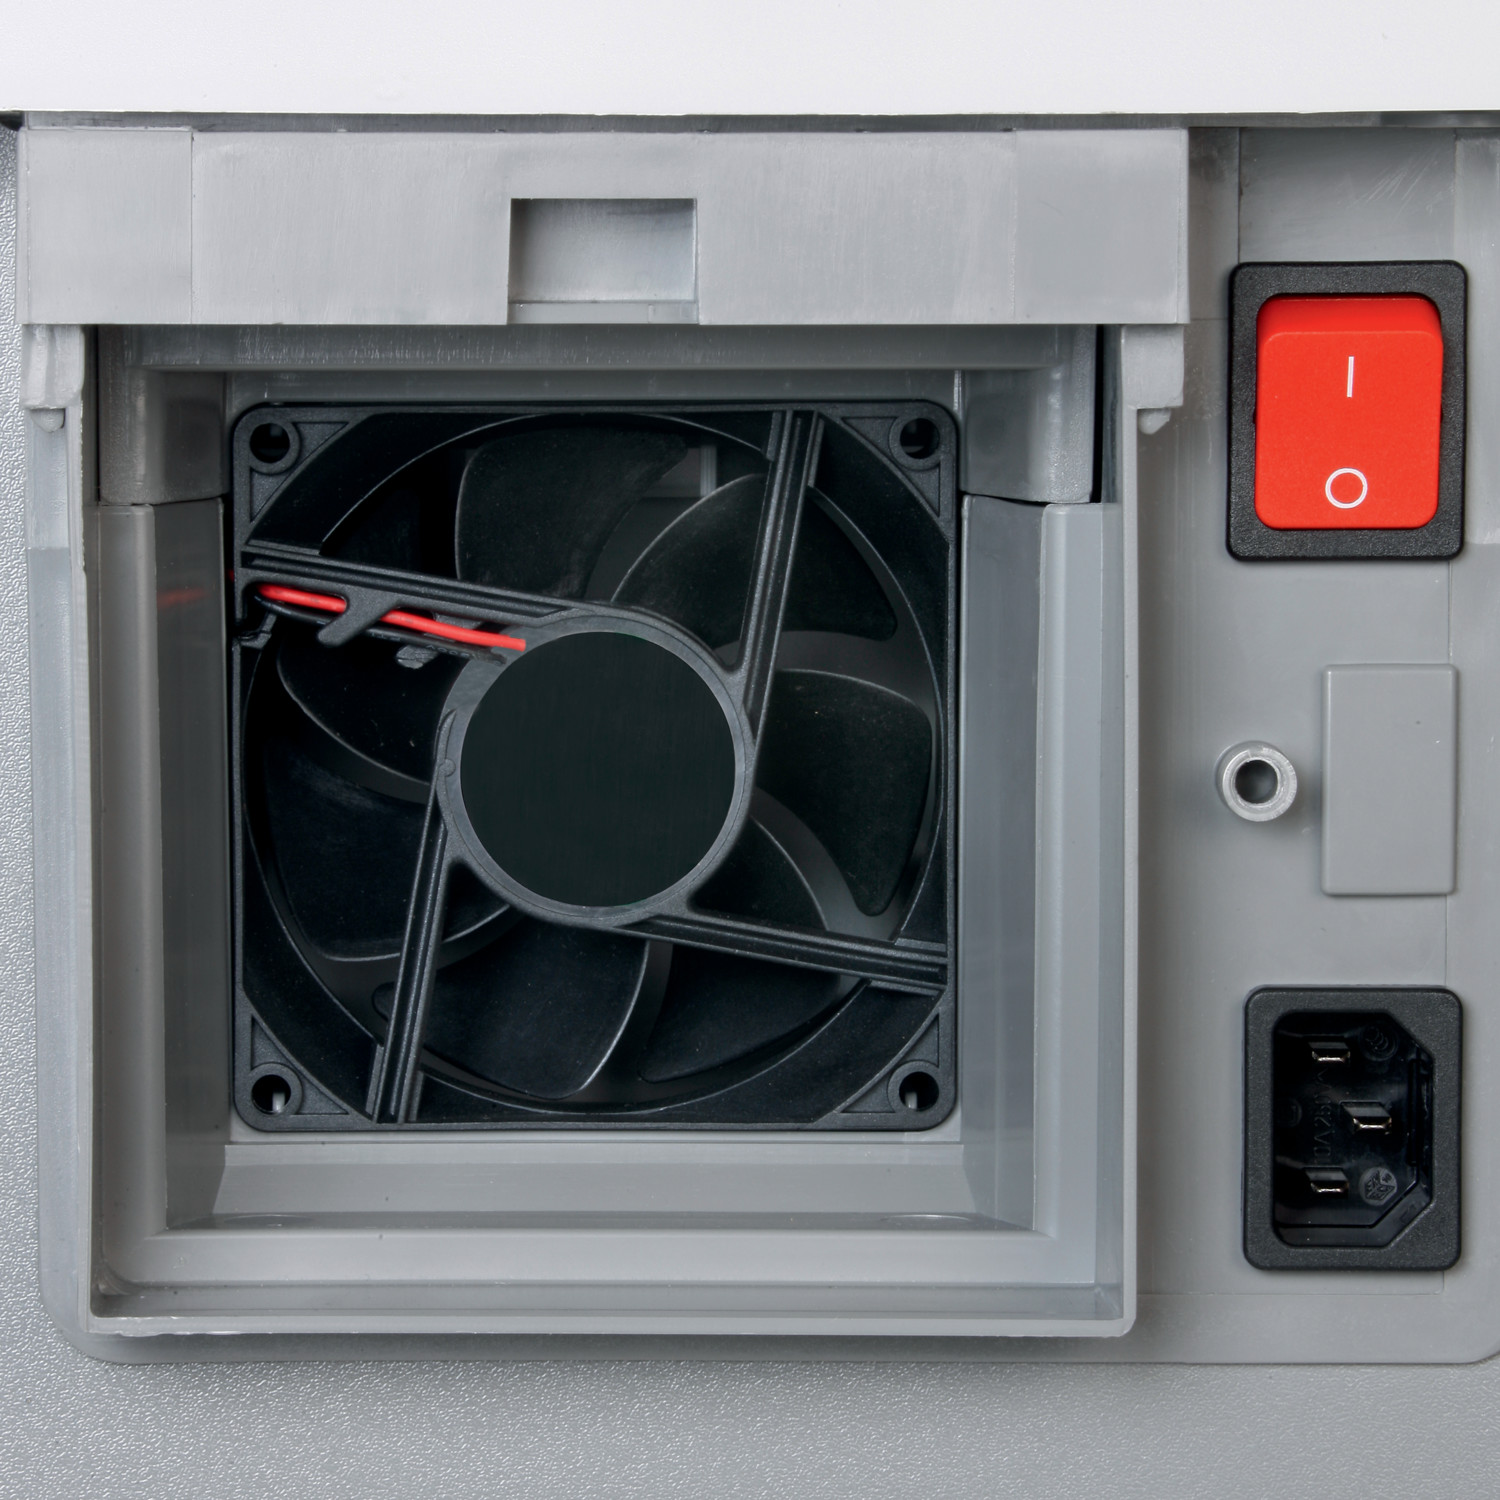 Un ventilateur performant aspire les particules de poussières fines à l'intérieur du destructeur de documents et les achemine vers le filtre